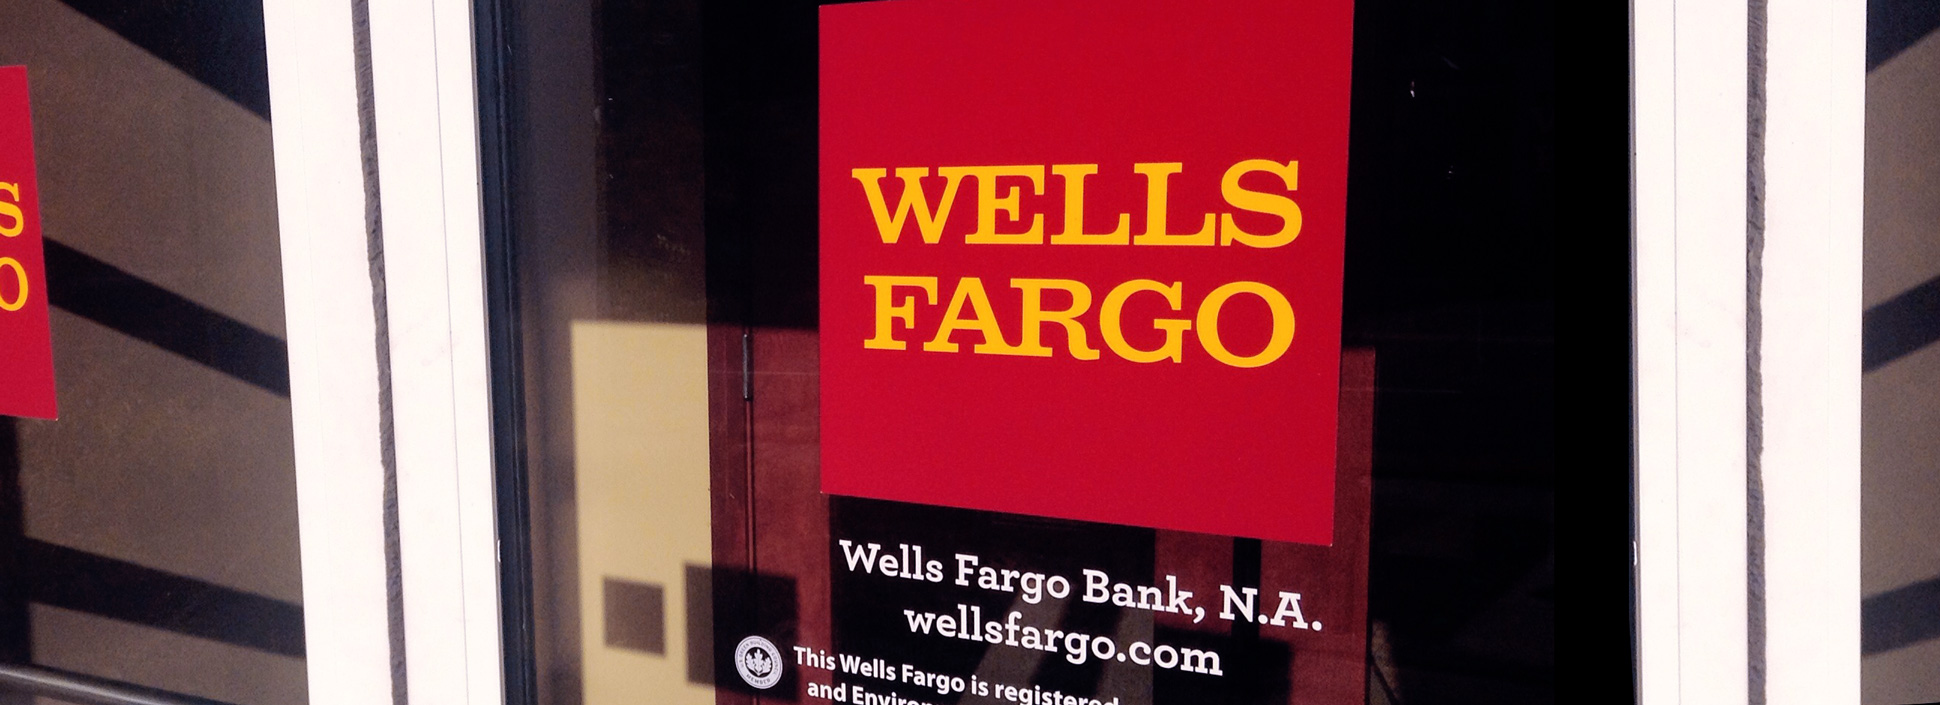 wells fargo bank location hours